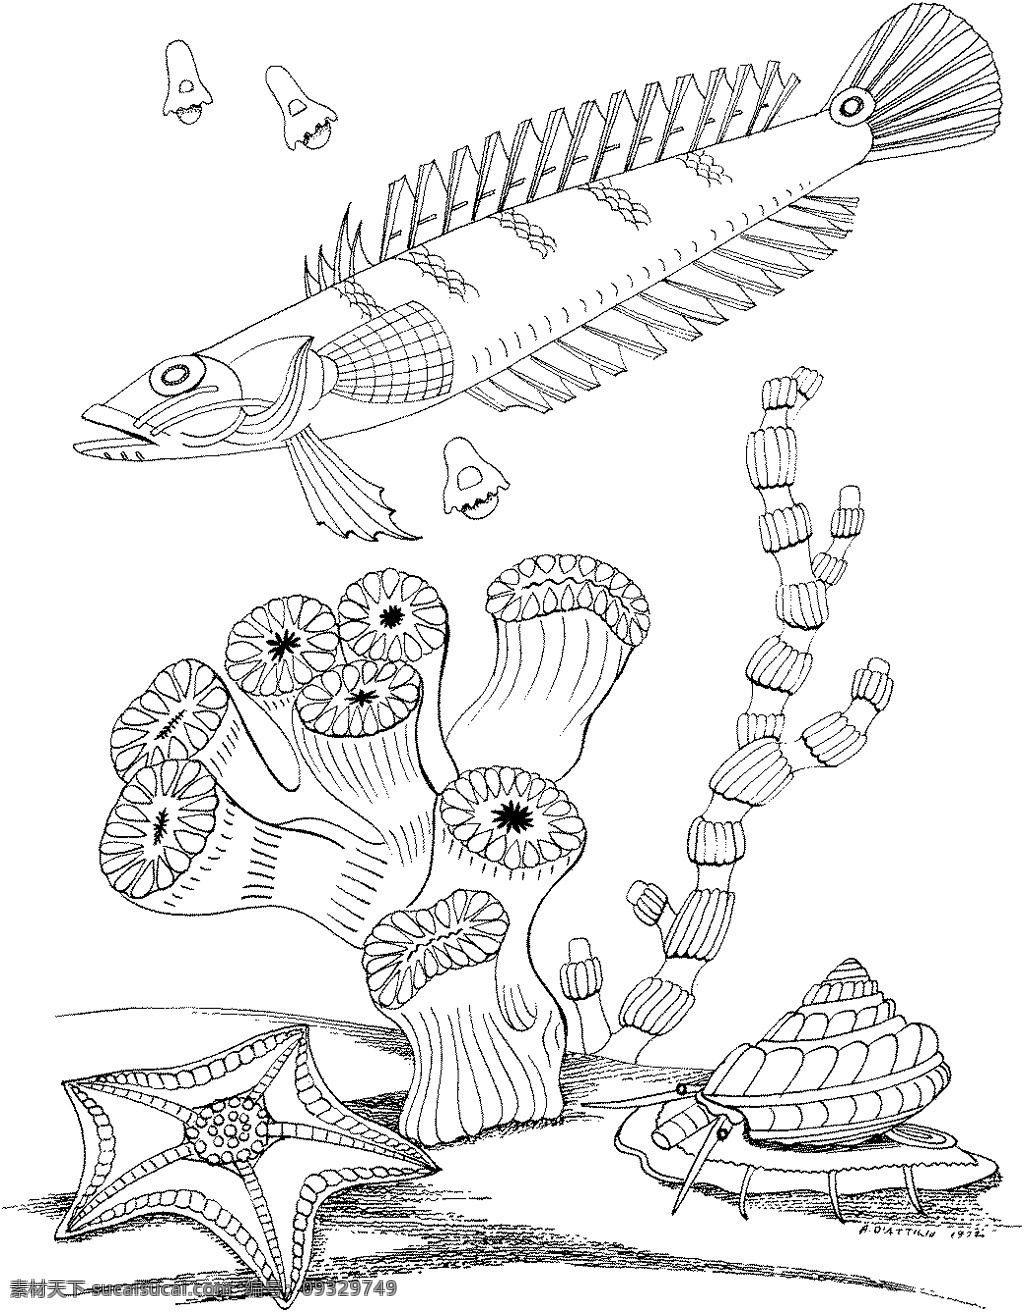 海洋生物 动物素材 海洋 动物 手绘 画 设计素材 动物专辑 素描速写 书画美术 白色